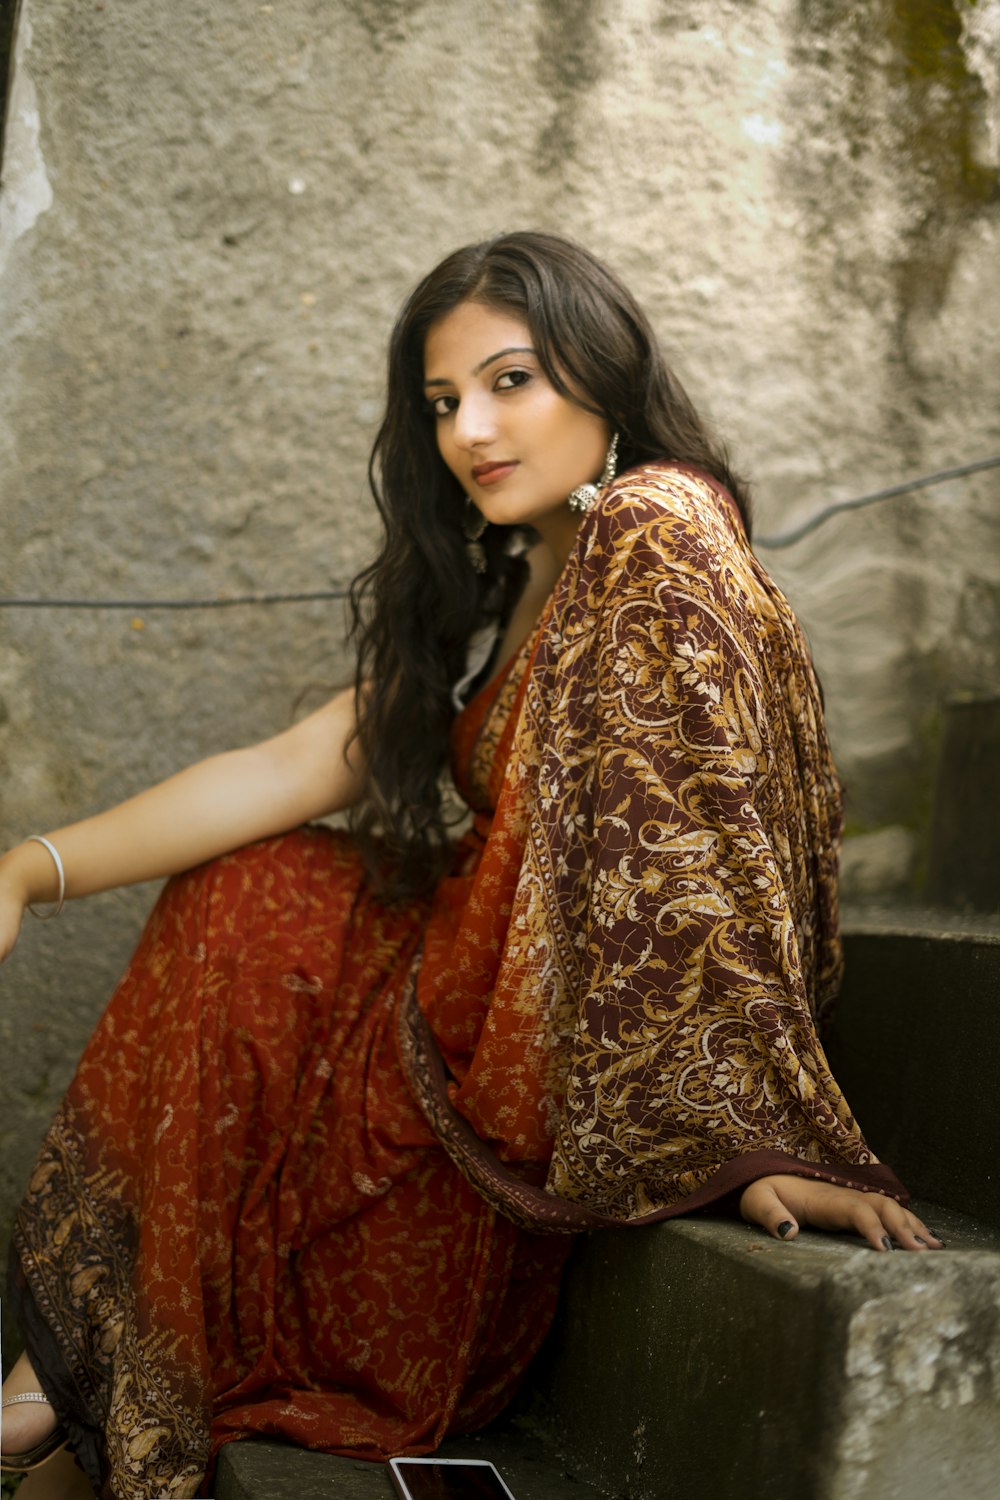 Frau im rot-goldenen Sari-Kleid sitzt auf einer grauen Betontreppe